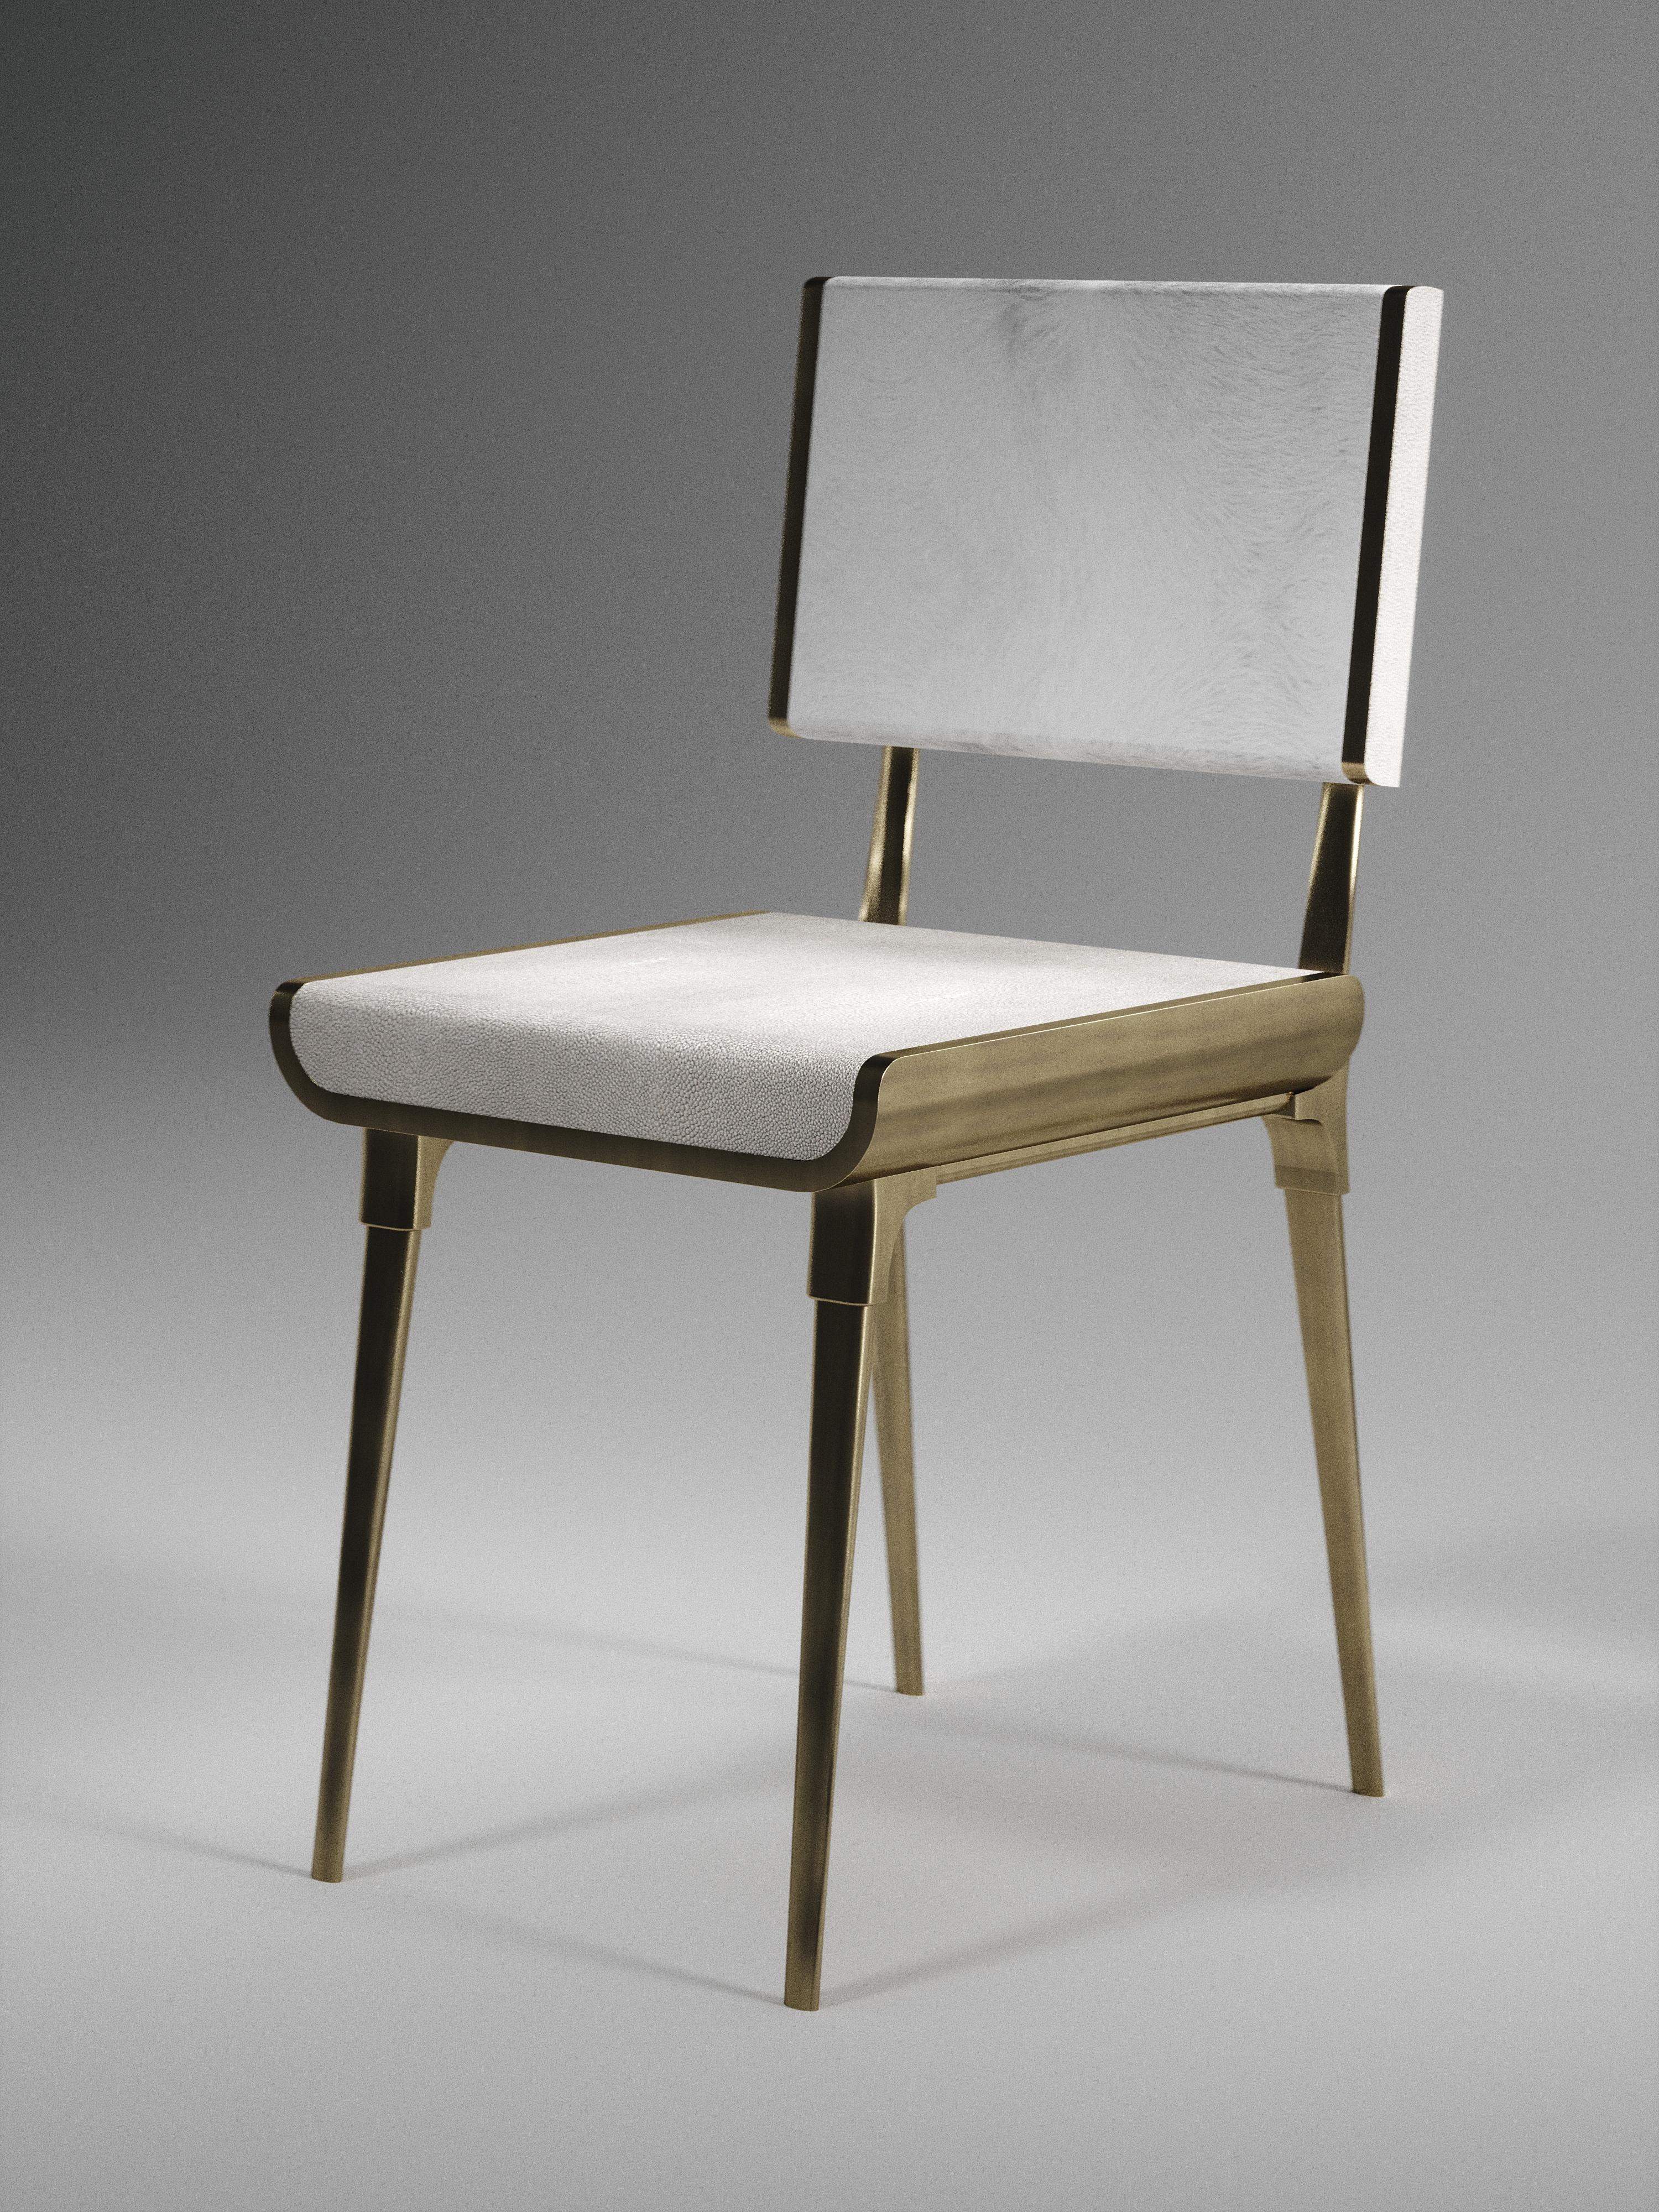 Inspiriert von der originalen Dandy-Bank von Kifu Paris (siehe Bilder am Ende des Dias), ist der Dandy II Chair die ultimative Luxus-Sitzgelegenheit für ein Esszimmer oder eine Ecke. Die Sitzfläche ist mit cremefarbenem Chagrin eingelegt und die